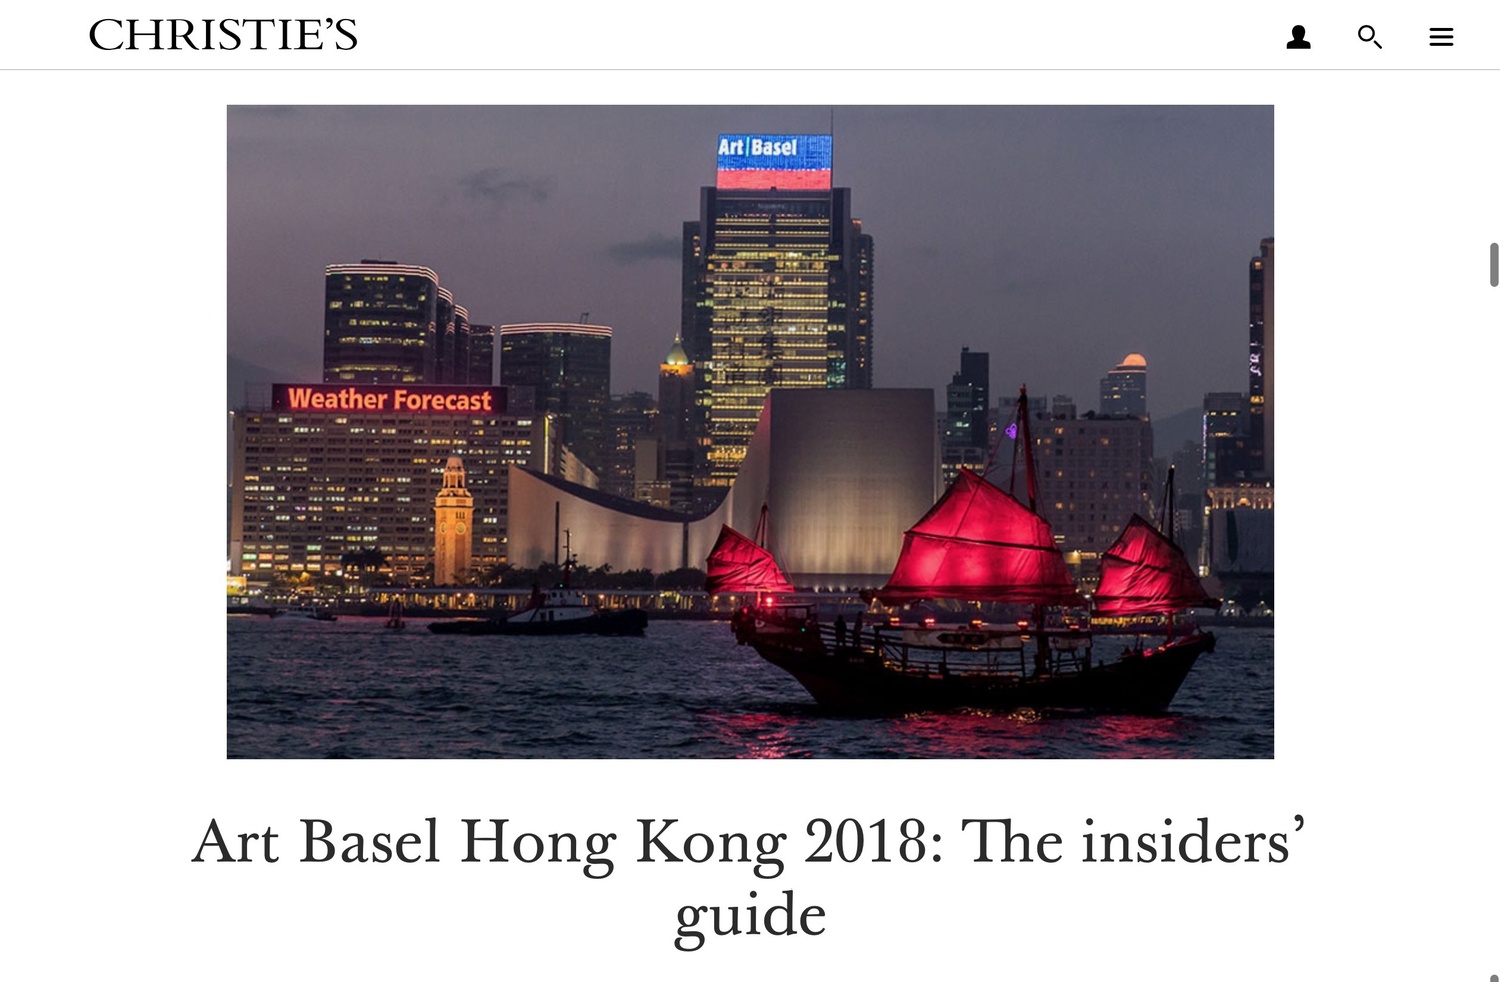 Art Basel Hong Kong 2018: The Insider’s Guide